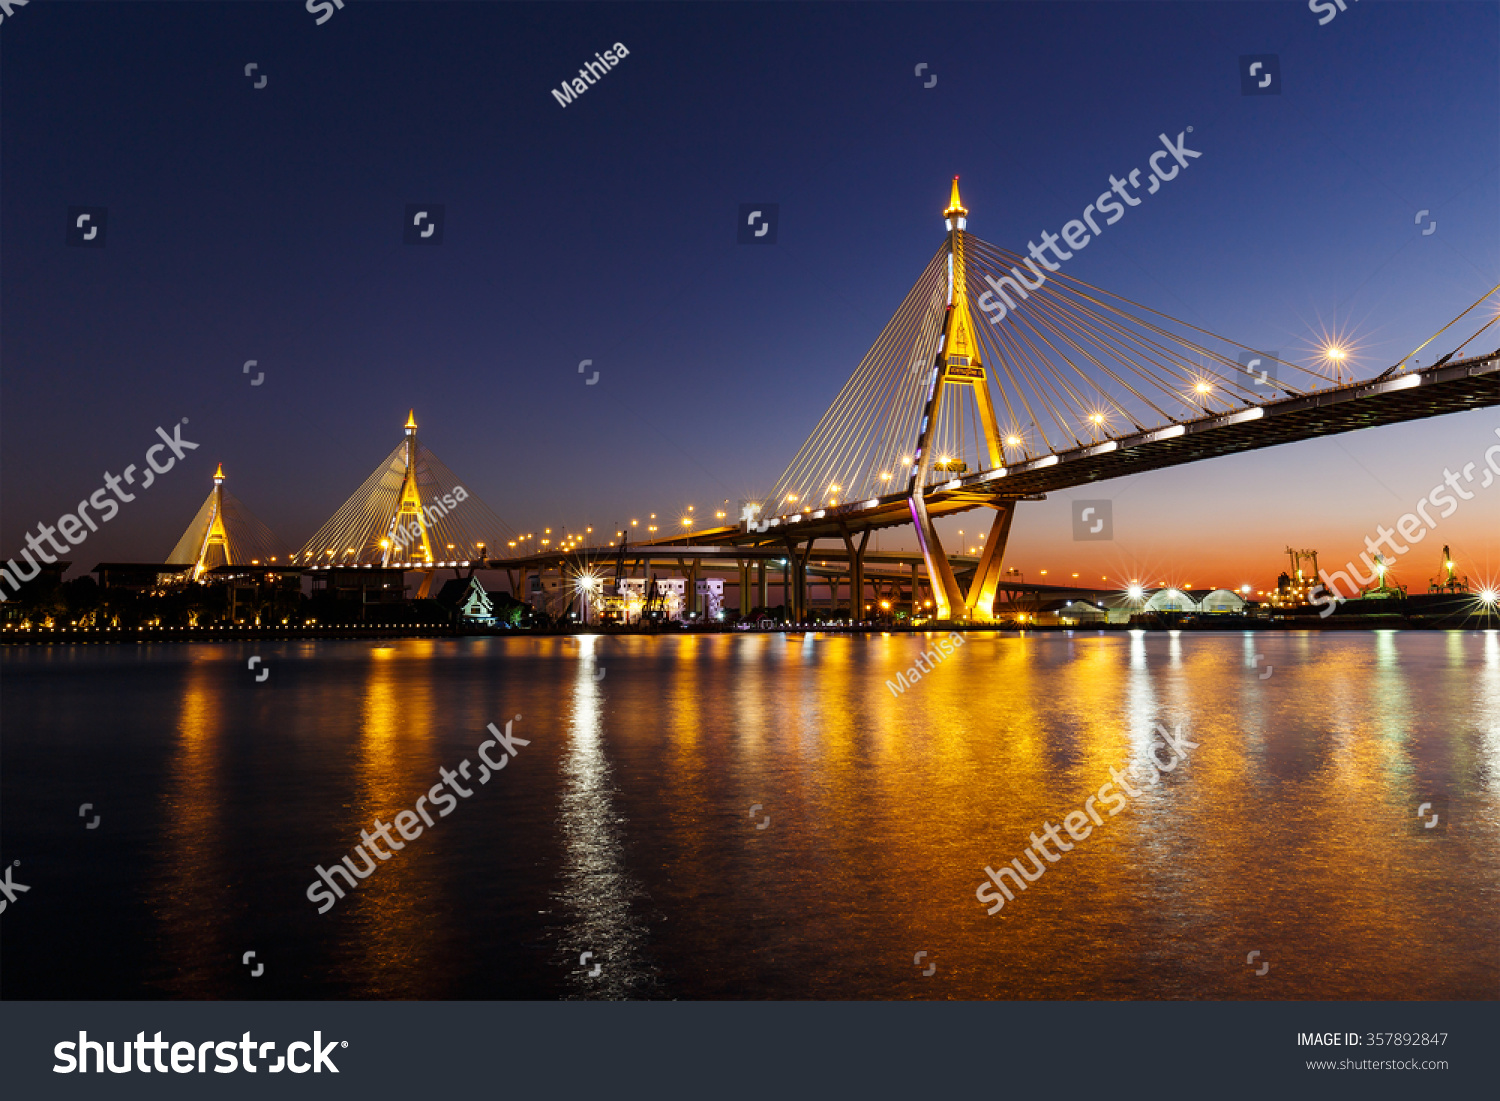 Bhumibol Bridge or Industrial Ring Road bridge at twilight #357892847